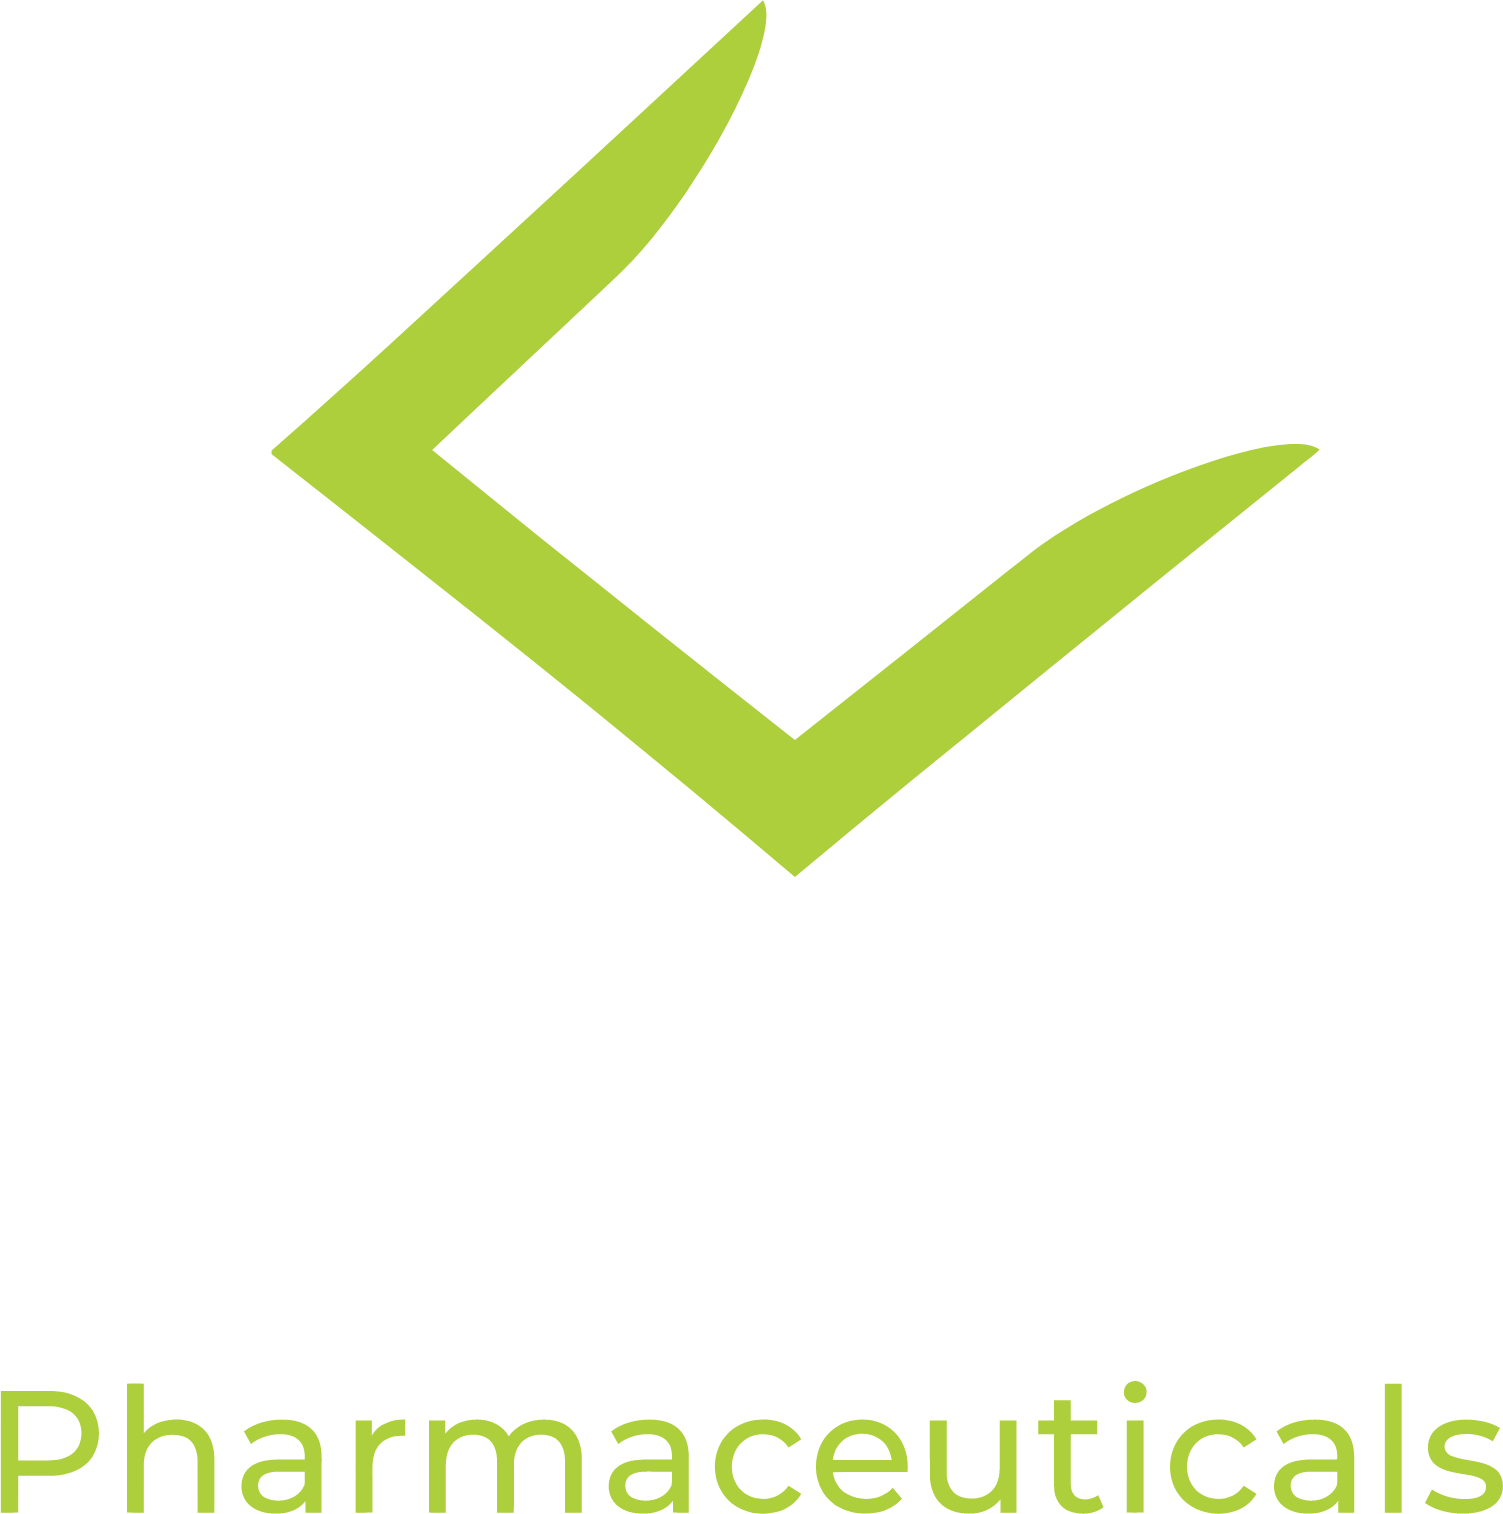 KalVista Pharmaceuticals logo large for dark backgrounds (transparent PNG)